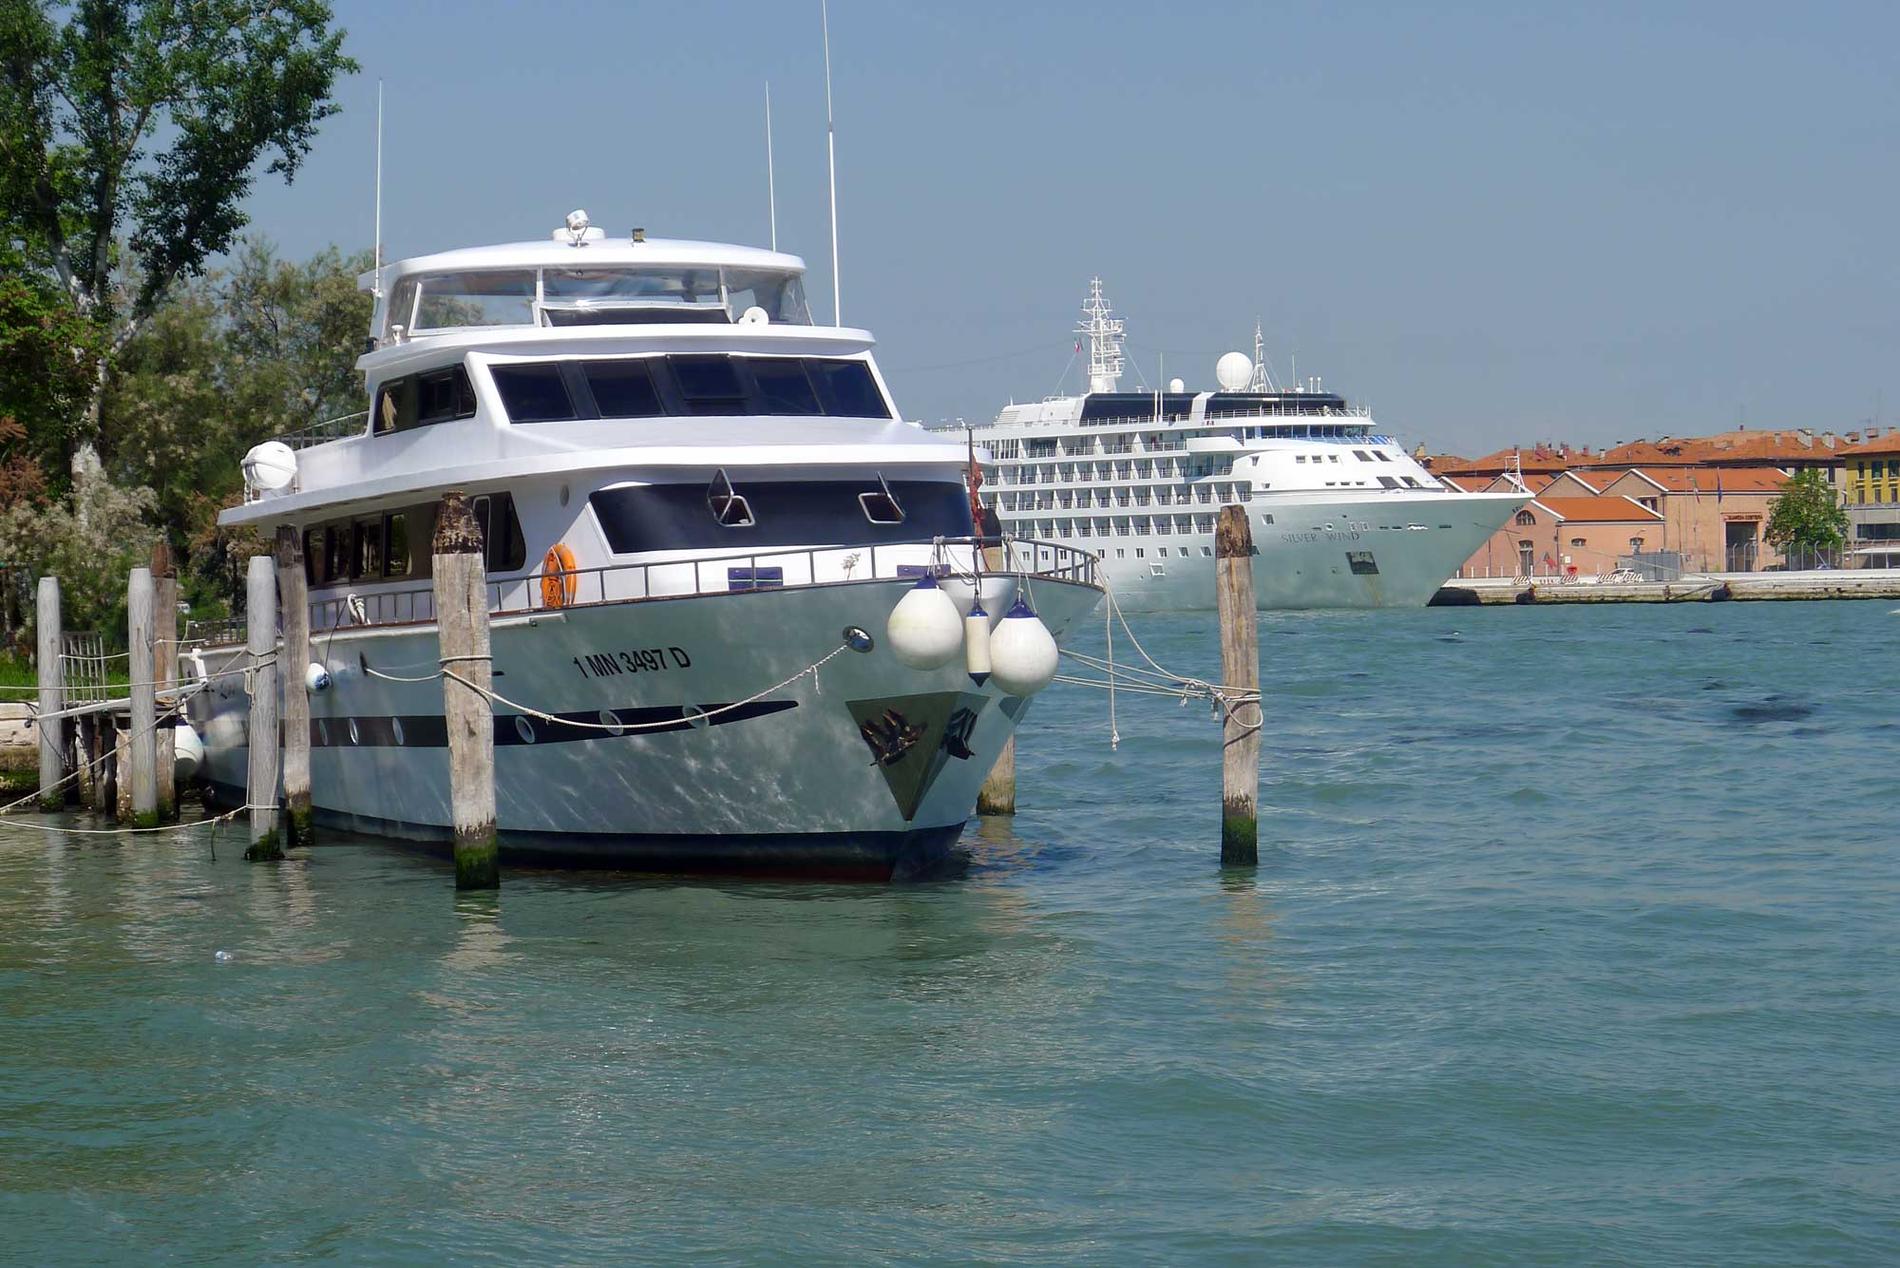 Tvärs över vattnet från Sarah ligger Venedigs stora kryssningsterminal. I bakgrunden fartyget Silver Whisper.